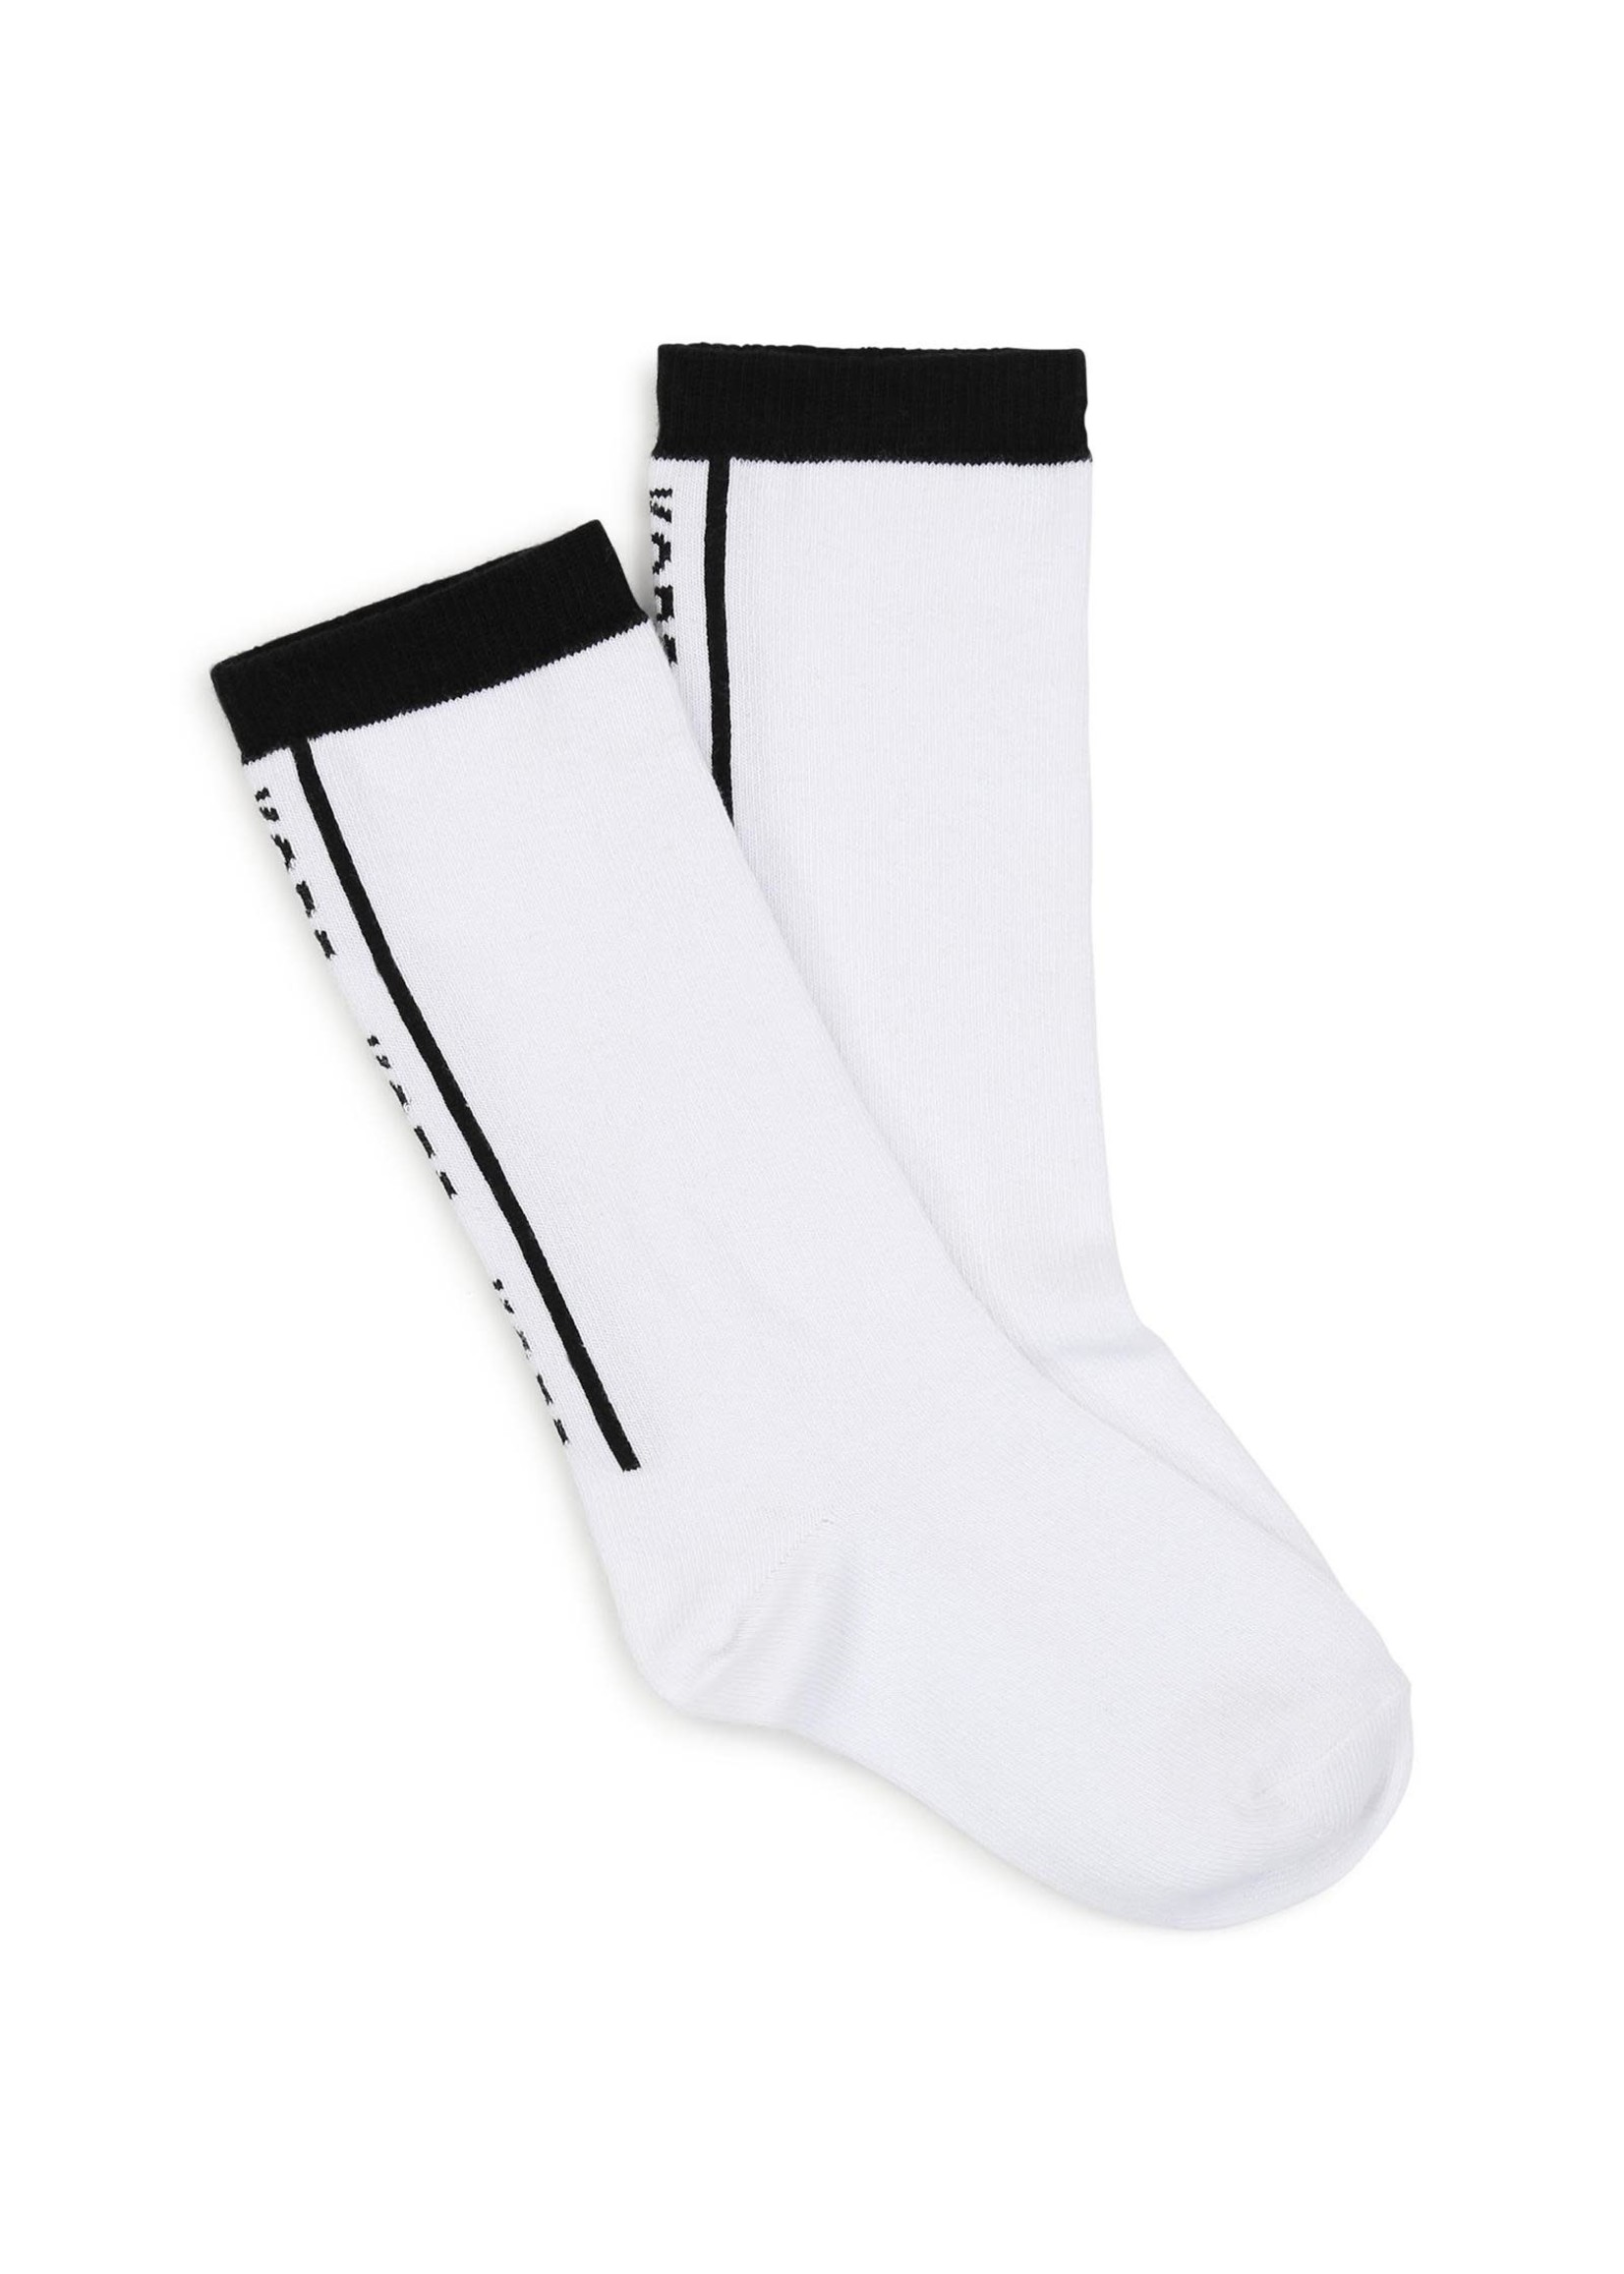 Michael Kors Michael Kors Socks wit/zwart